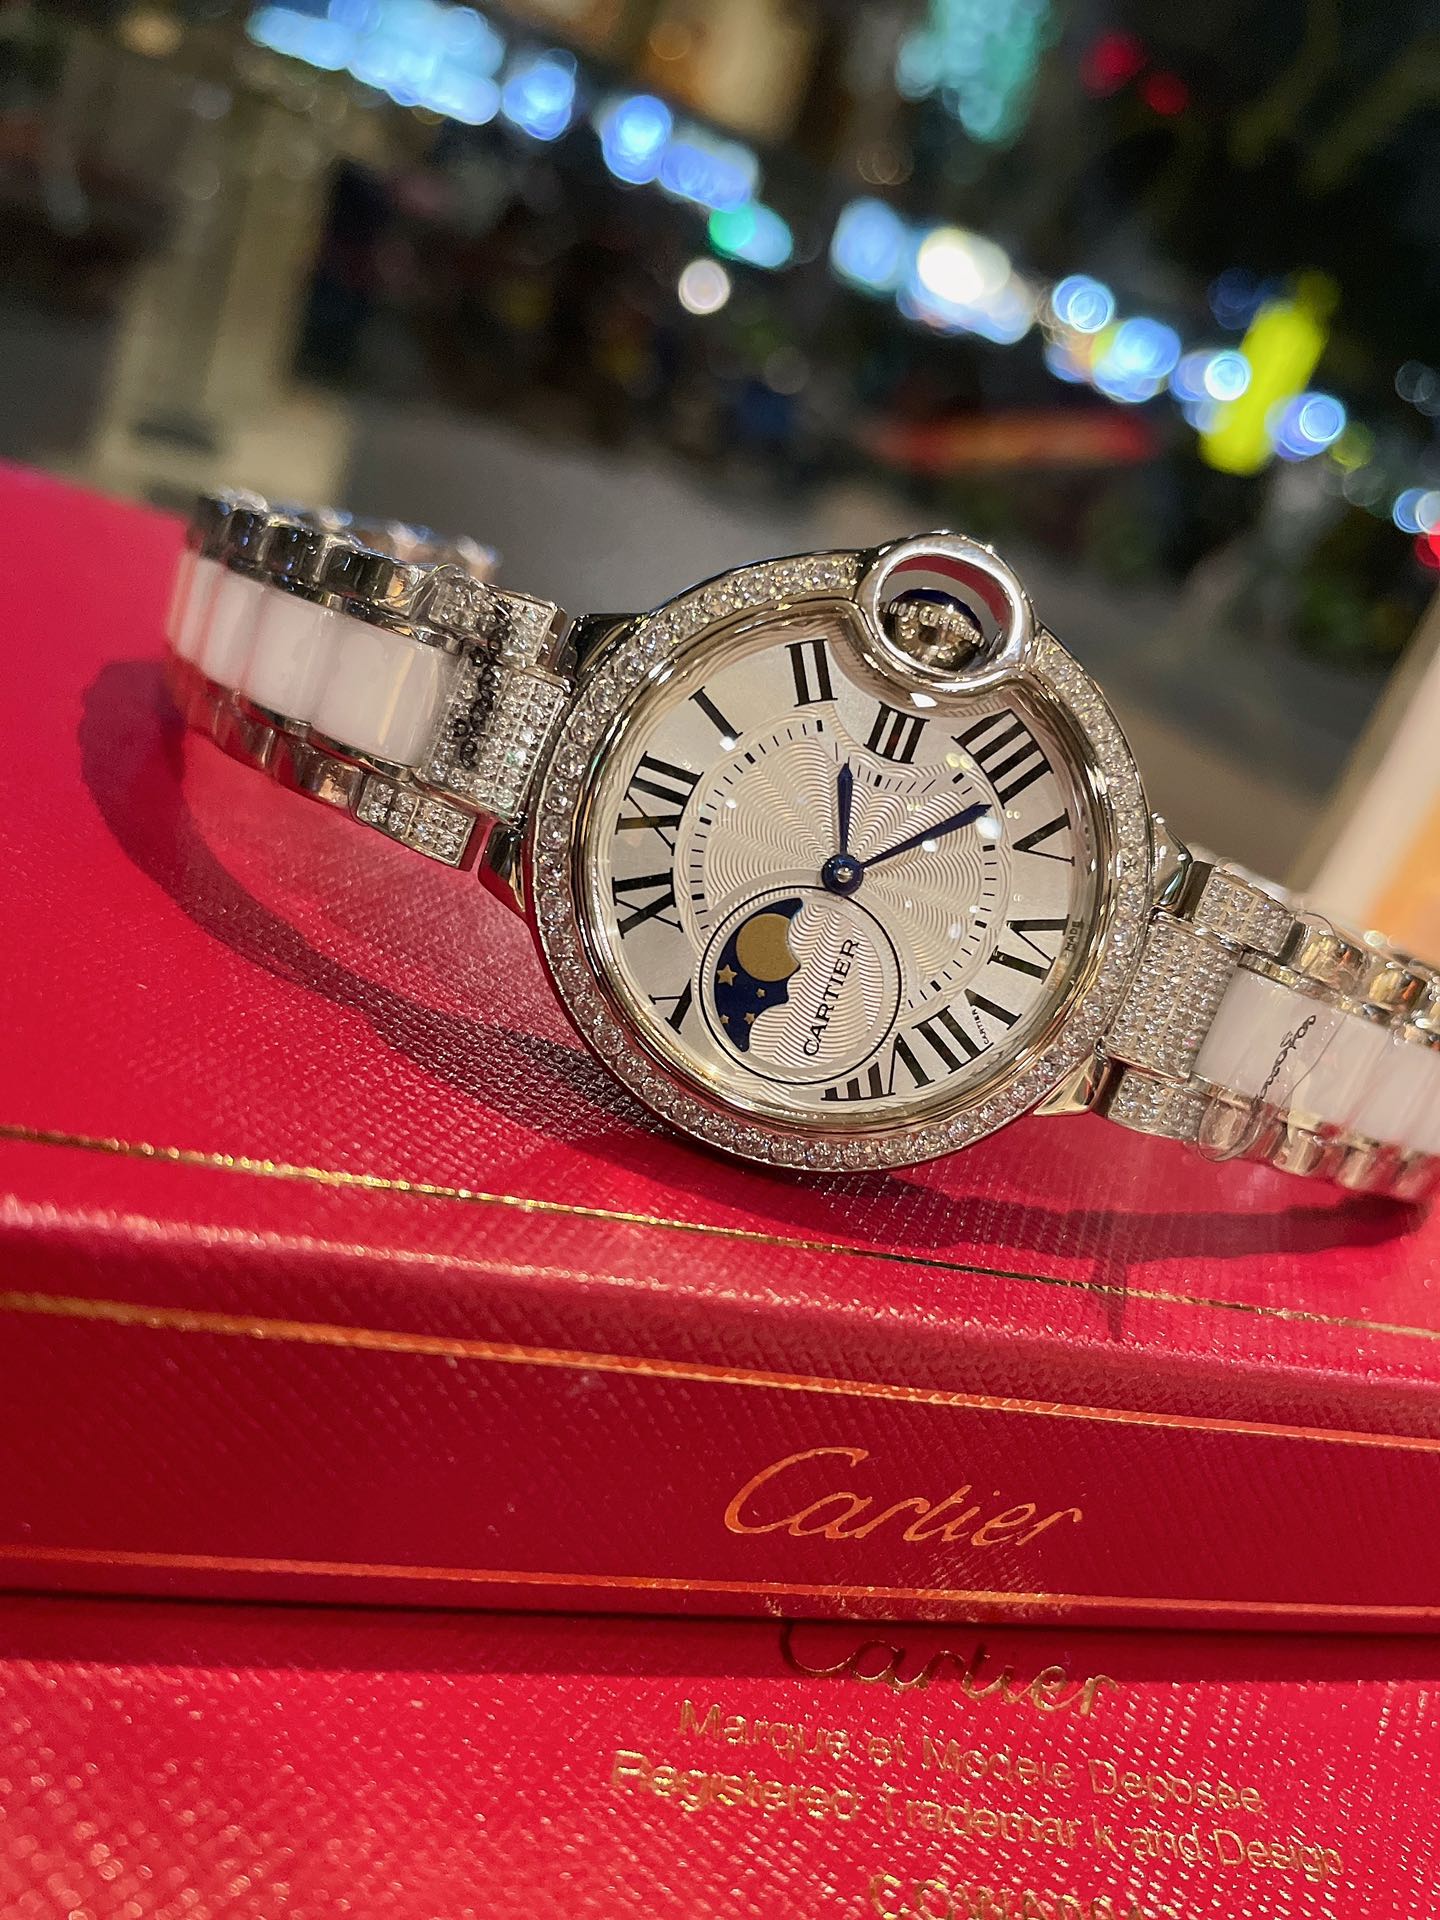 CARTIERカルティエ 真贋 時計スーパーコピー フランス 薄い腕時計 スチールバンド レザー 新品 ホワイト_4